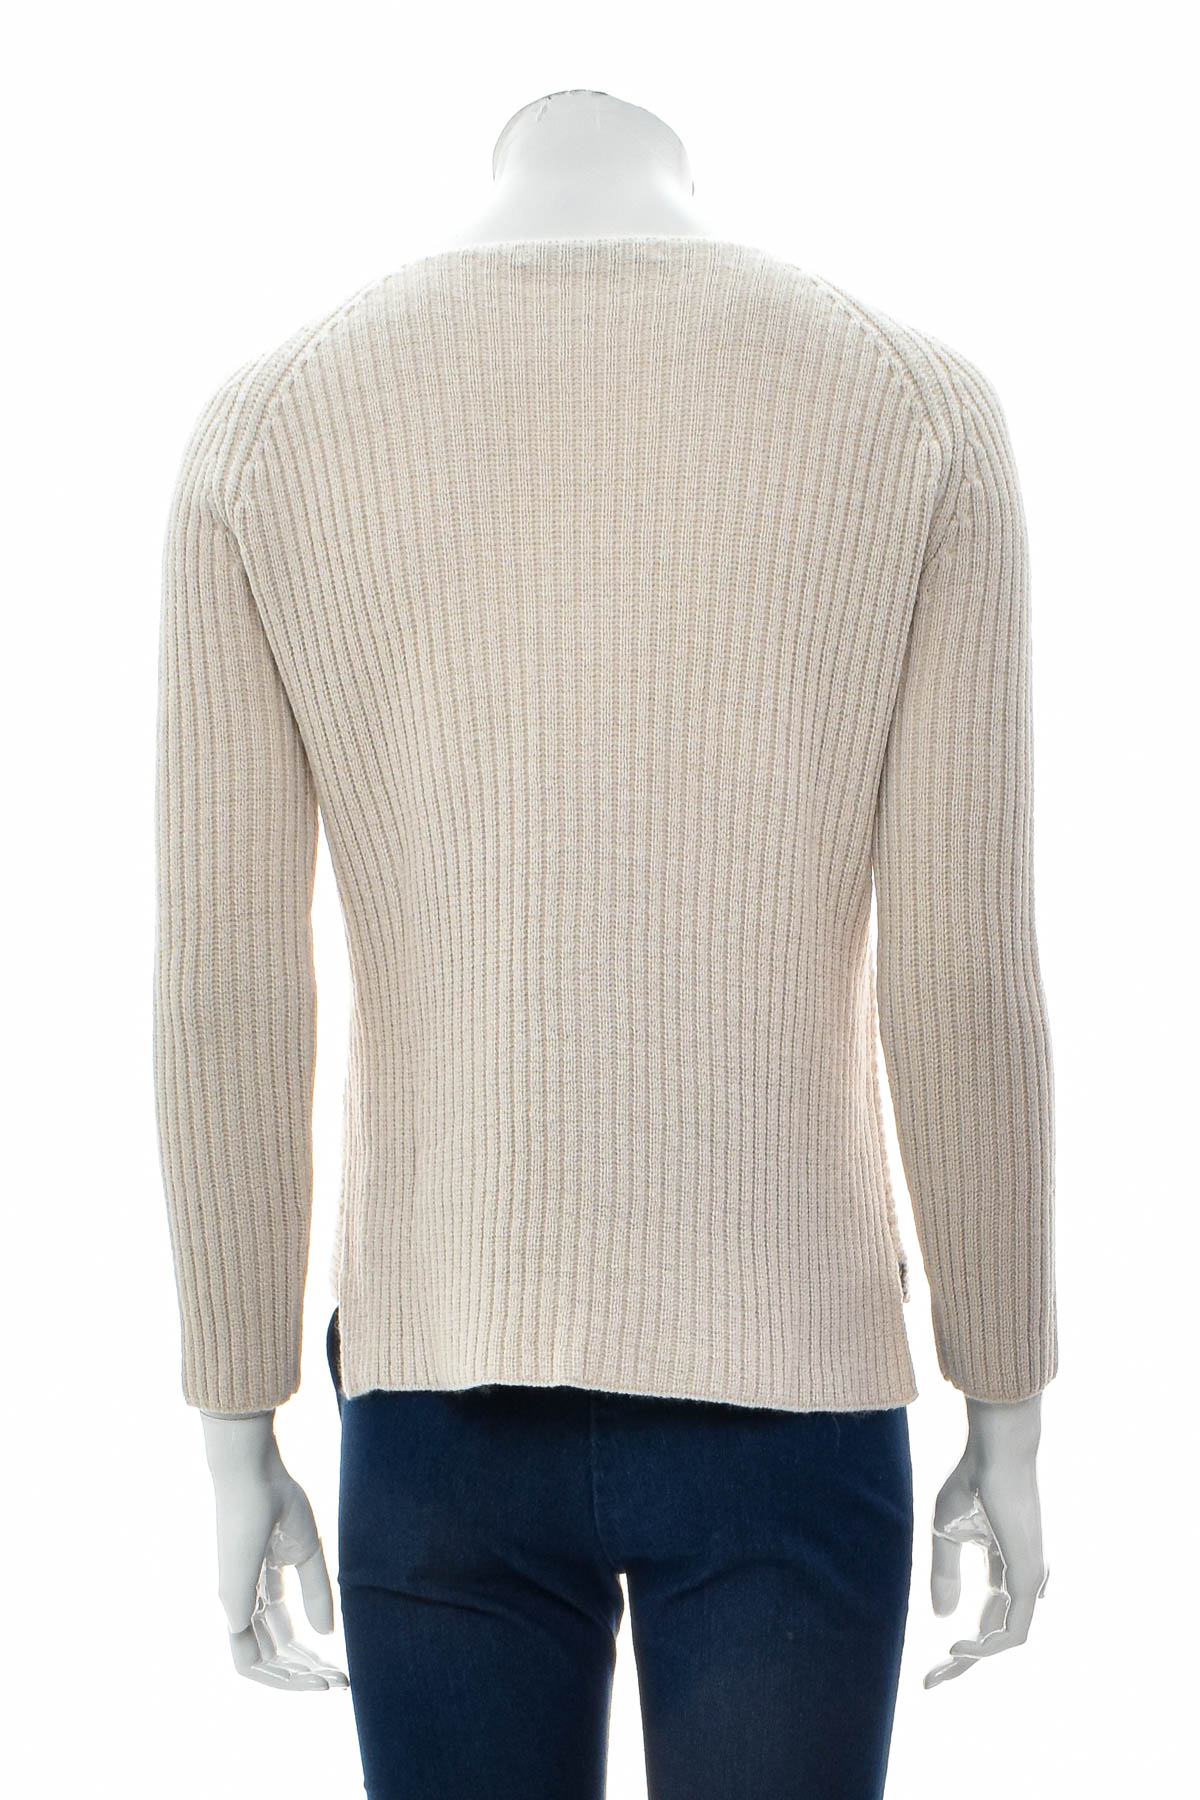 Women's sweater - Monari - 1